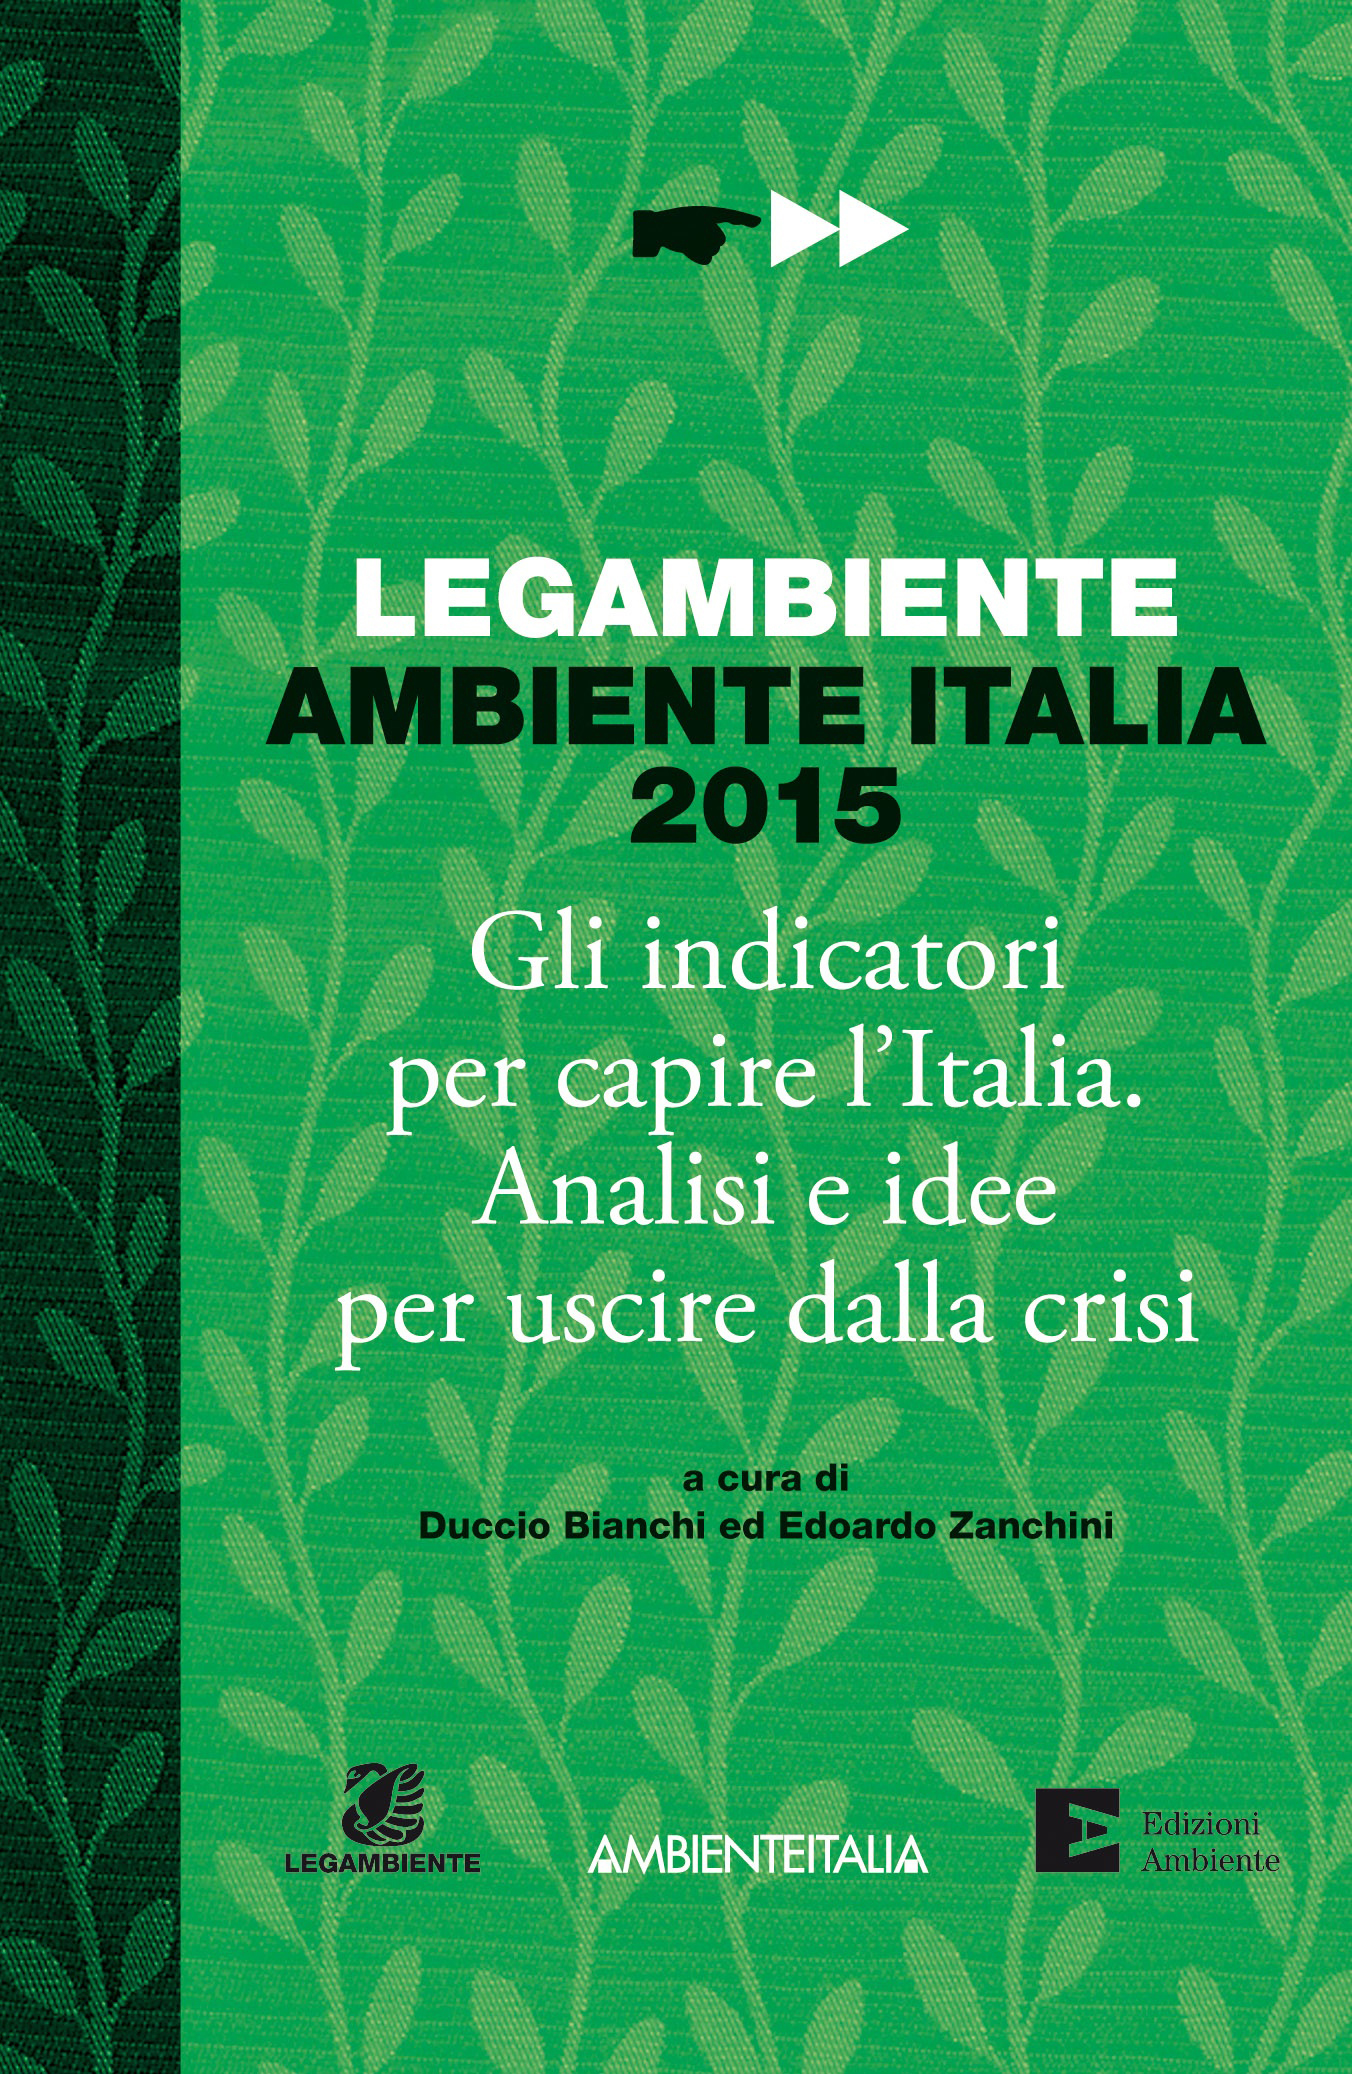 Ambiente Italia 2015: spunti (green) e riflessioni per uscire dalla crisi